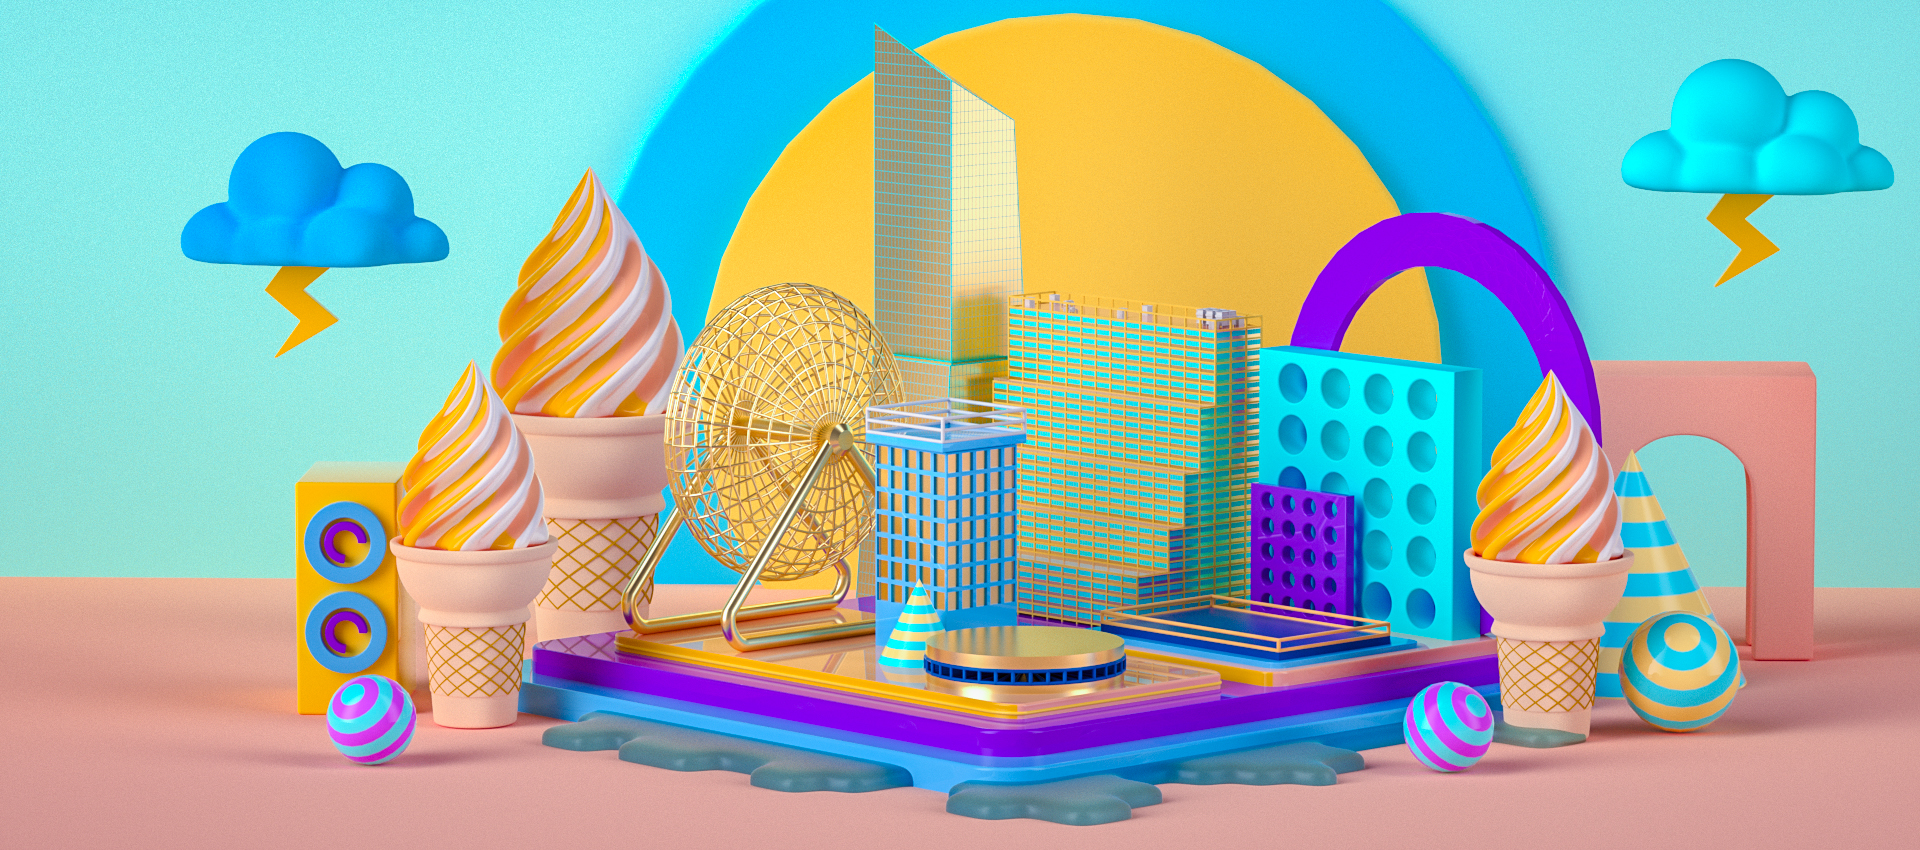 C4D模型虚拟城市展台绚丽色彩创意C4D模型虚拟城市展台绚丽色彩创意.jpg